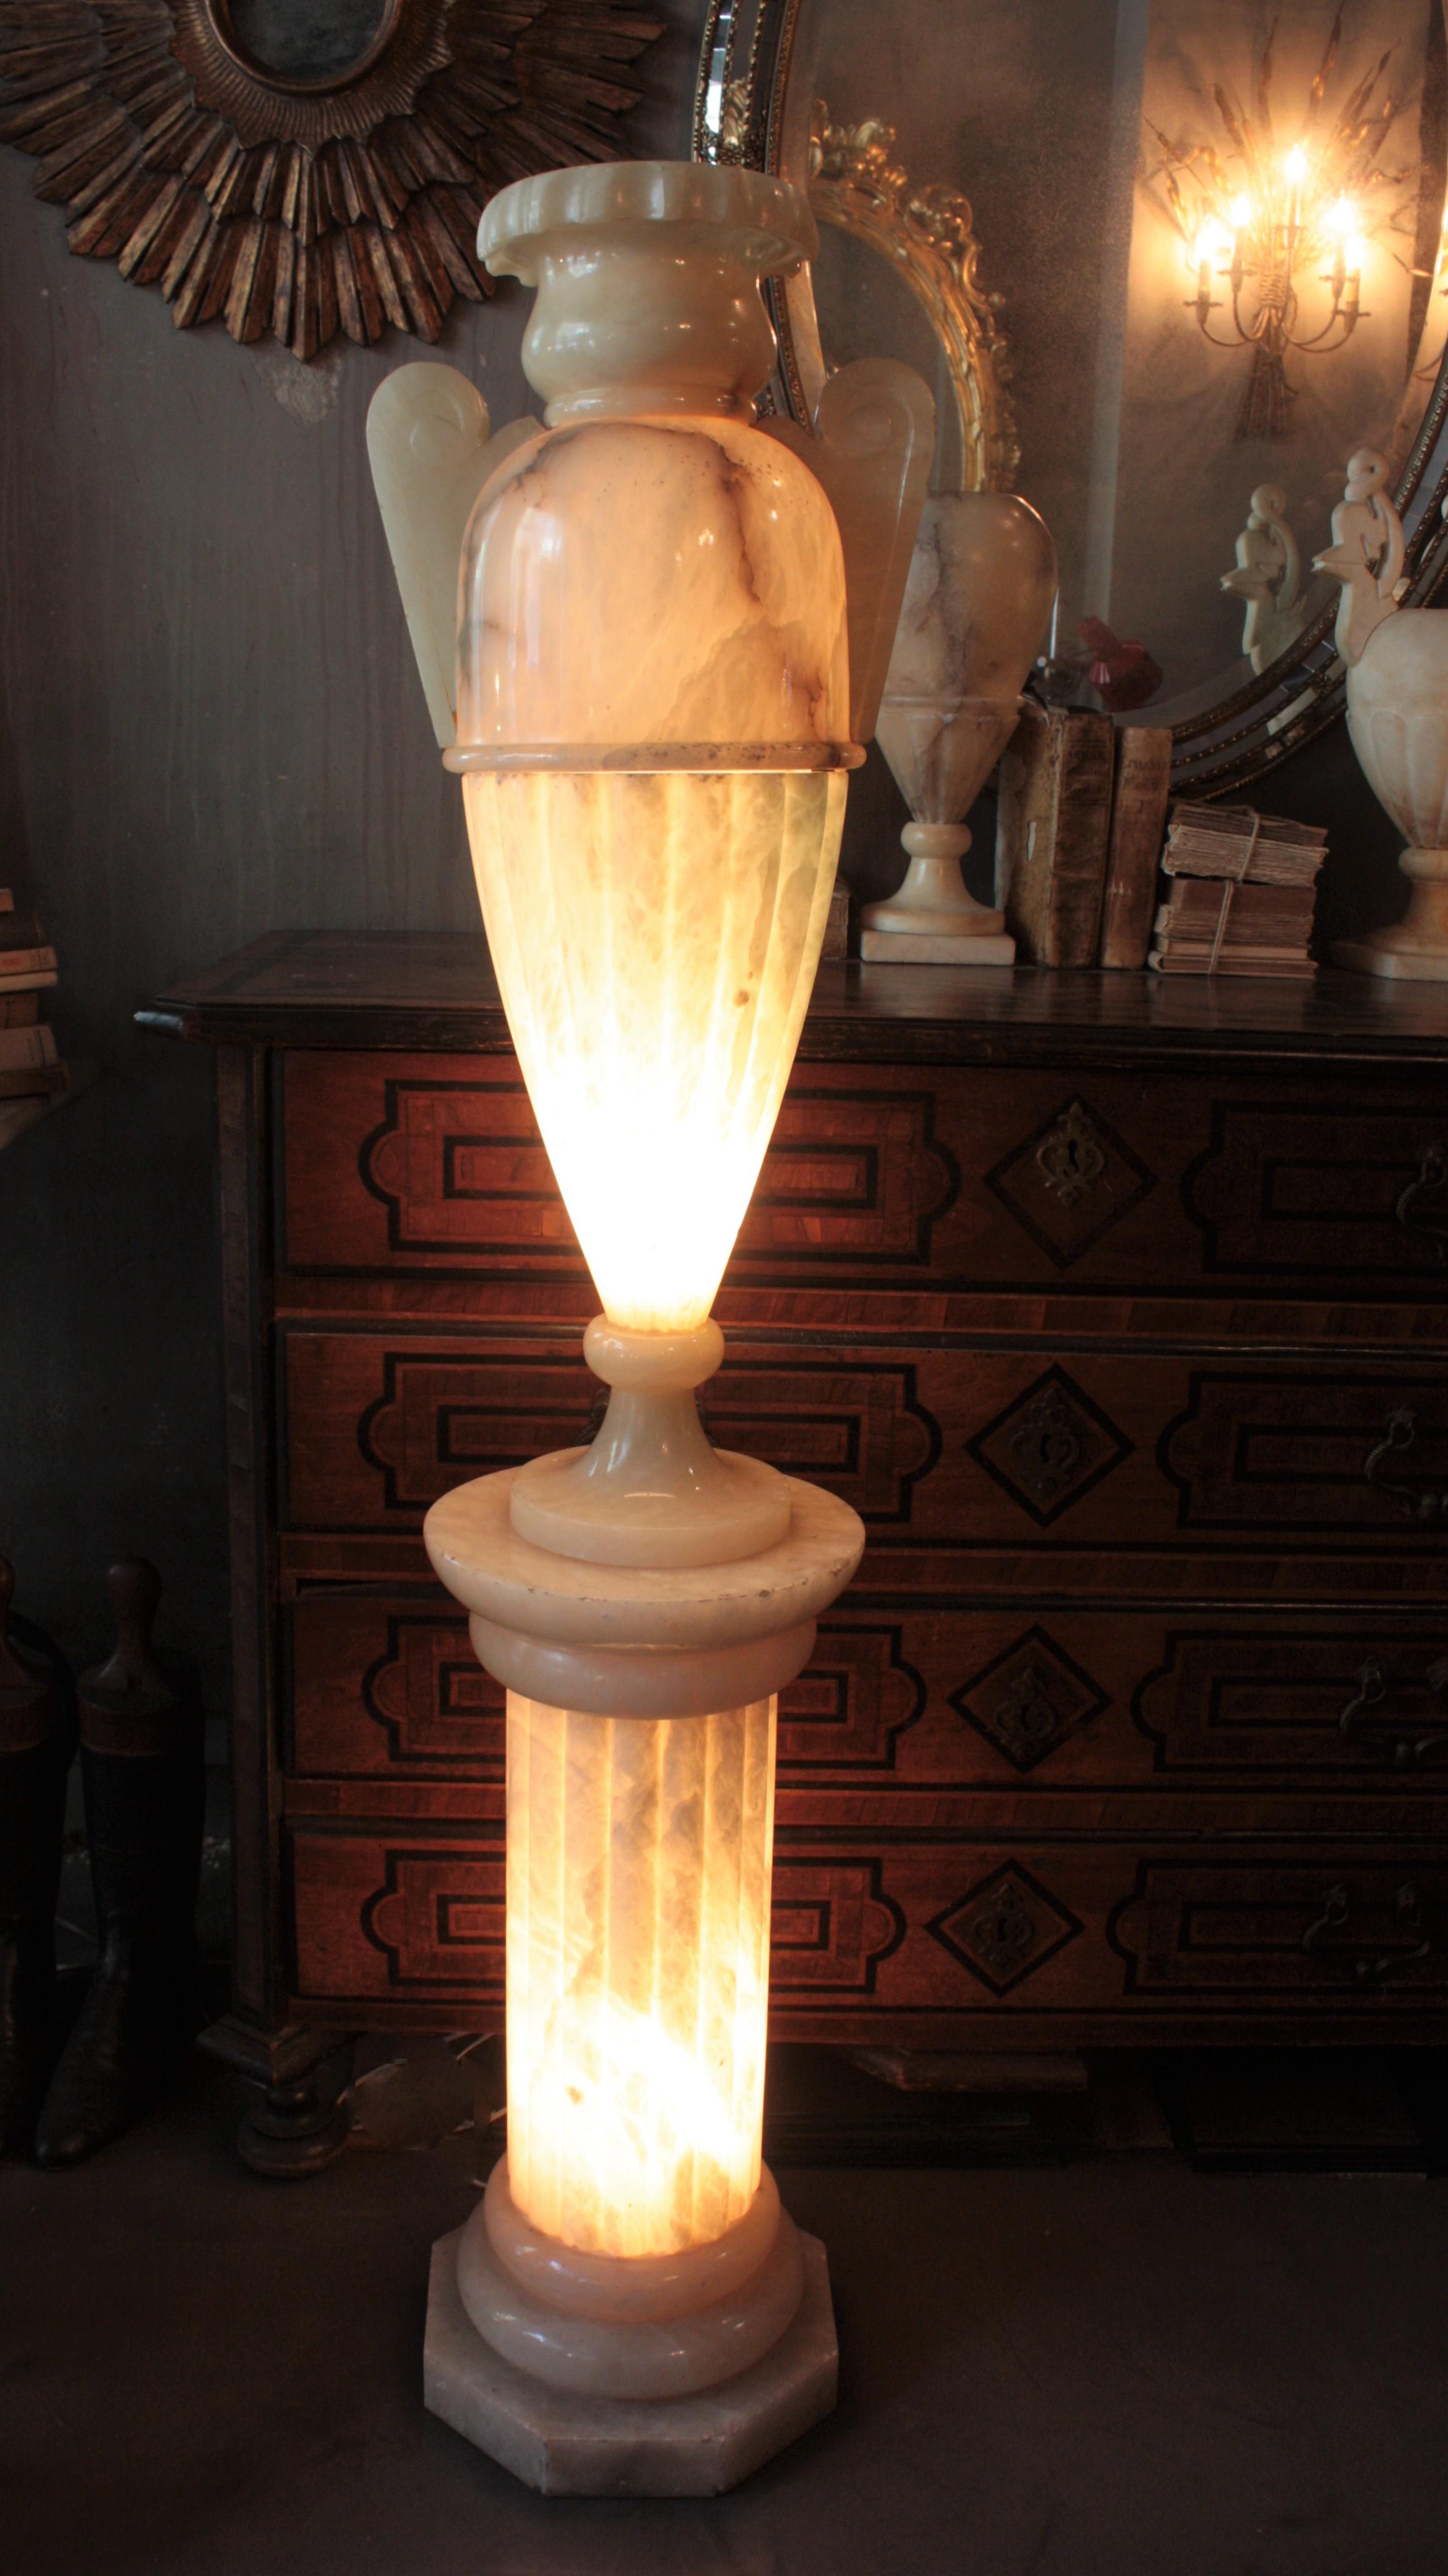 Monumental vase-urne néoclassique en albâtre monté sur un piédestal. Espagne, années 1920-1930.
Cette gigantesque lampe en forme d'urne avec des poignées a un design élégant et une patine d'ancienneté étonnante. Sur un piédestal en forme de colonne